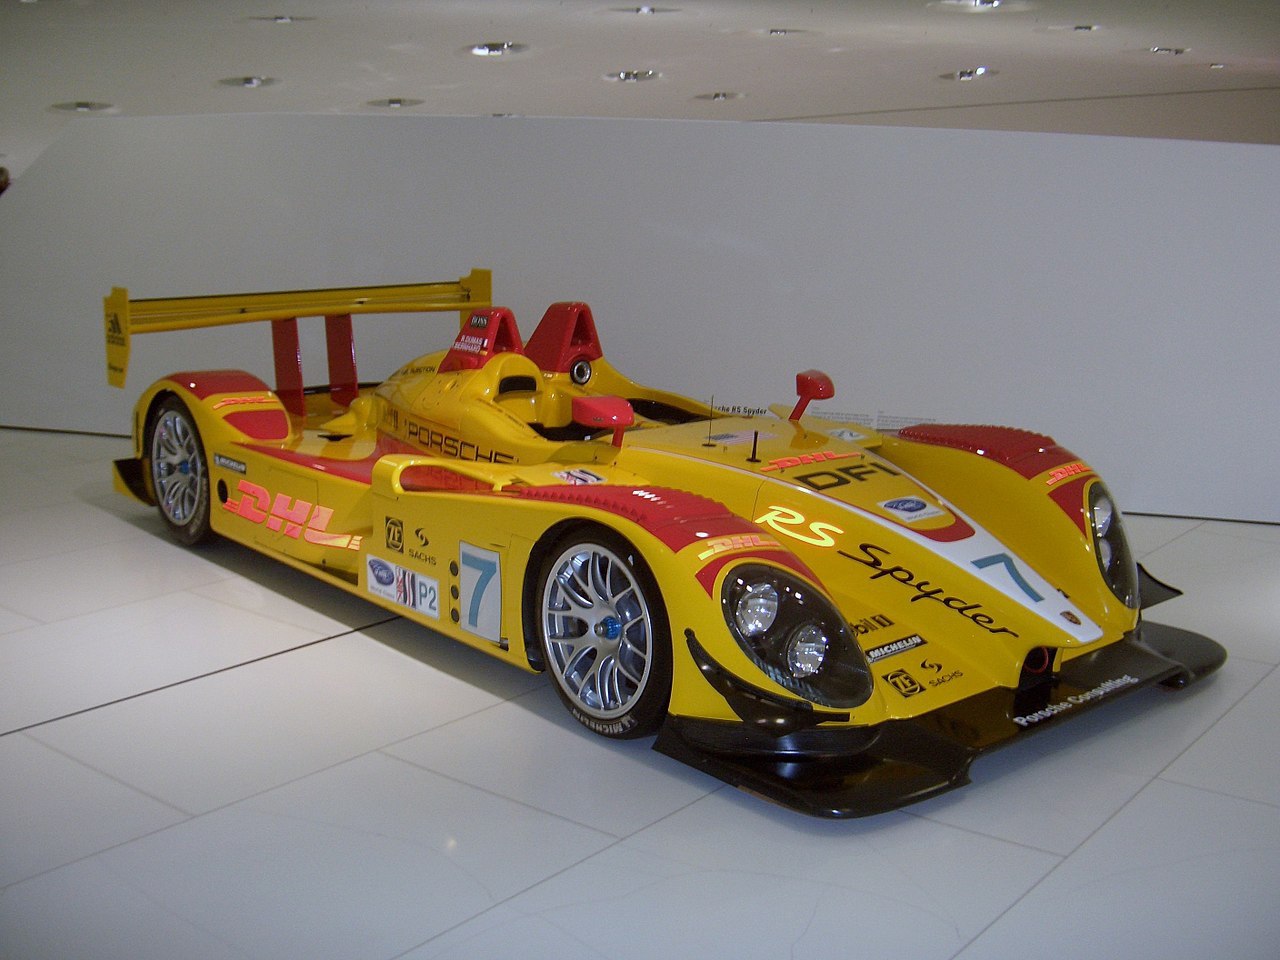 2005 Porsche RS Spyder in the Porsche Museum at Stuttgart